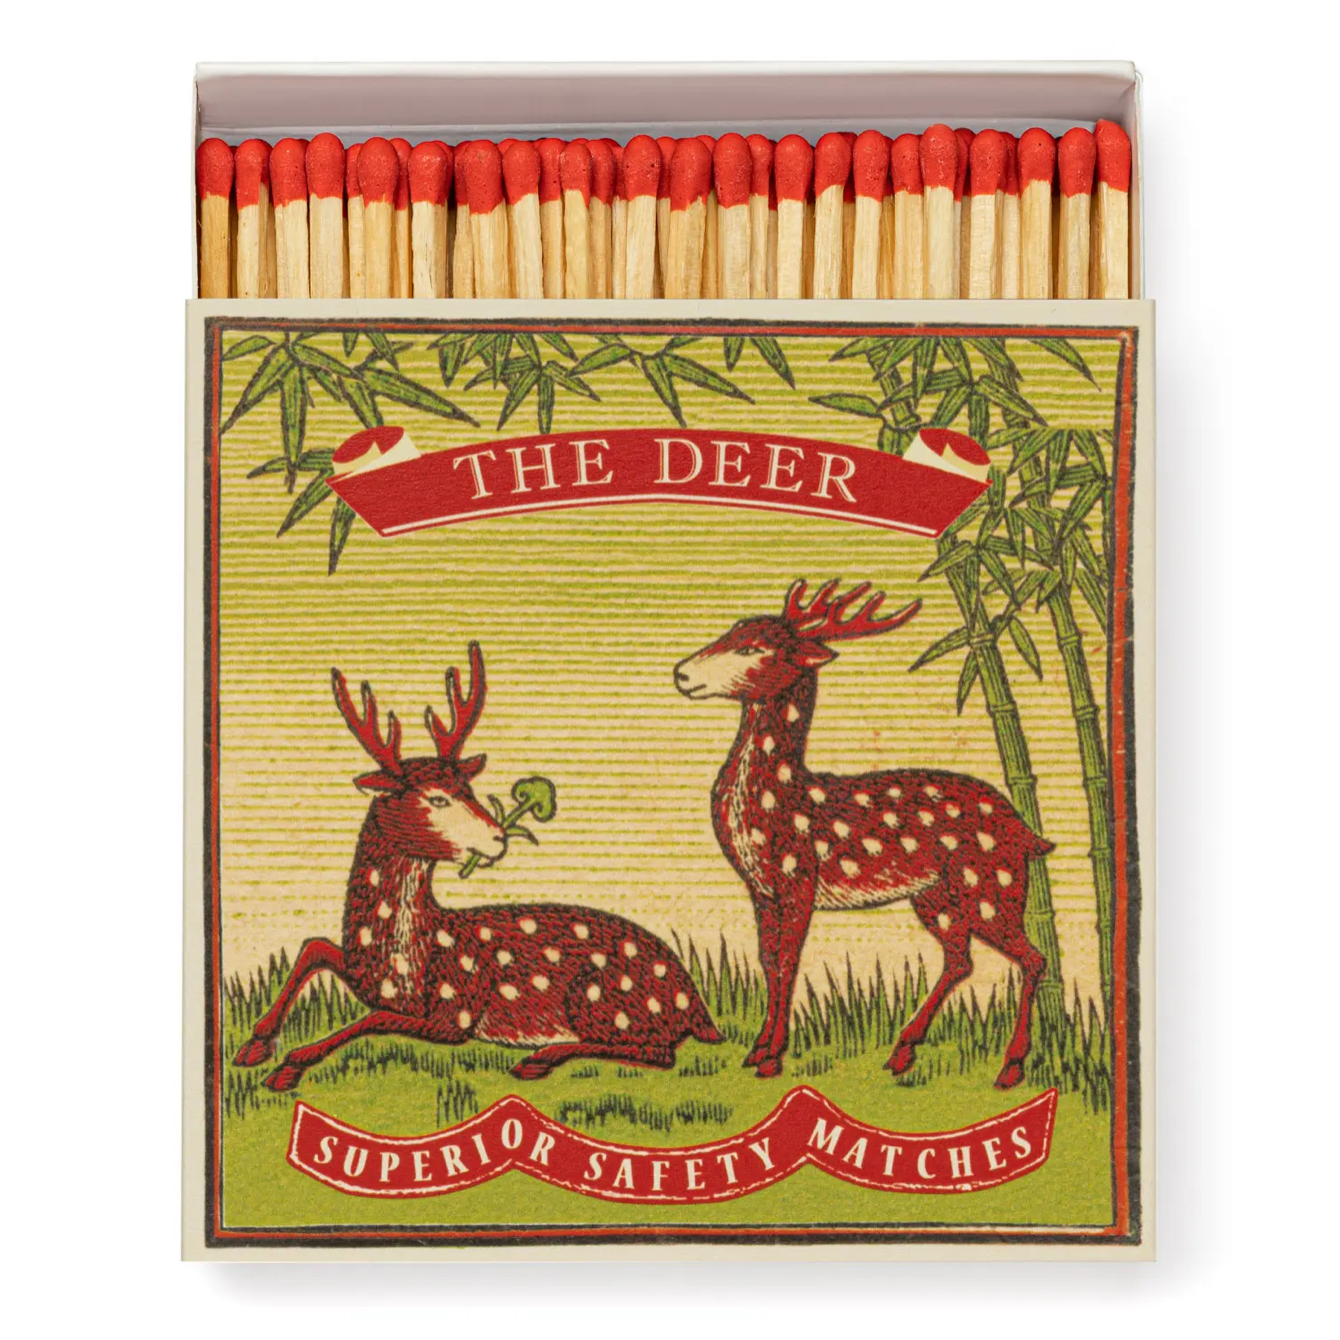 Deer Matches